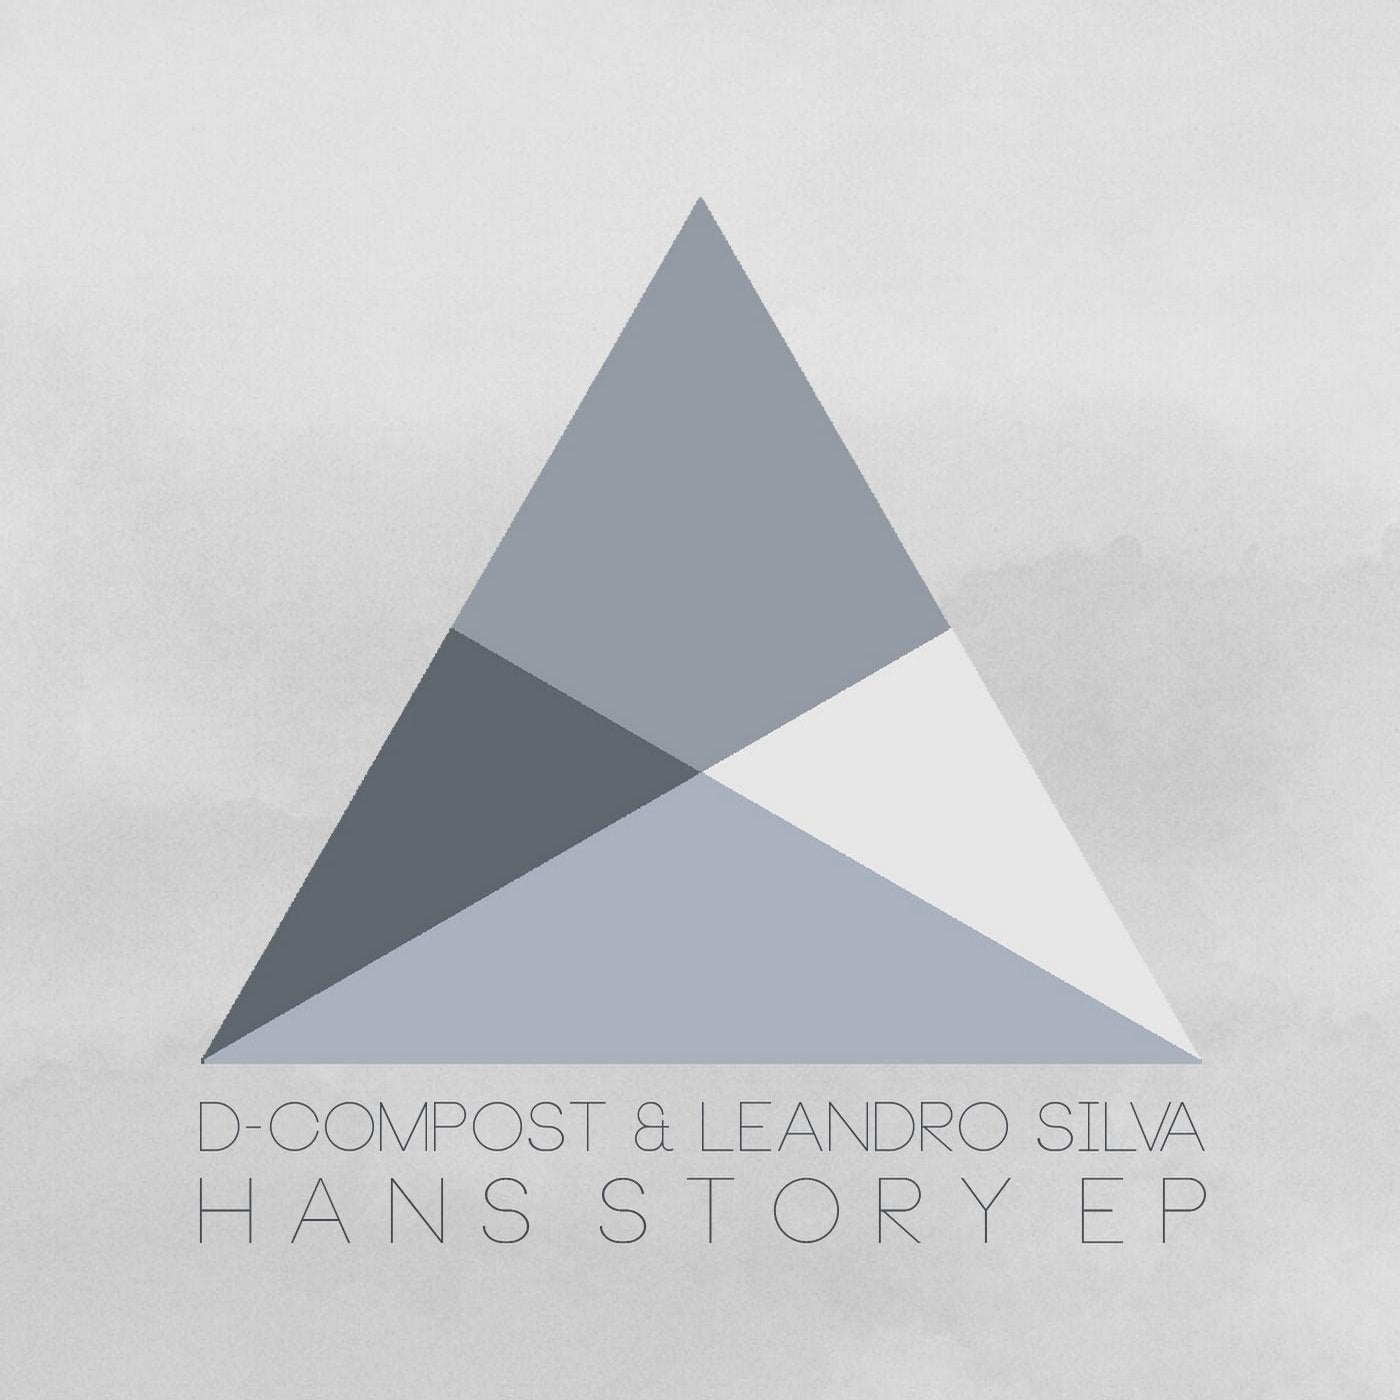 Hanz Story